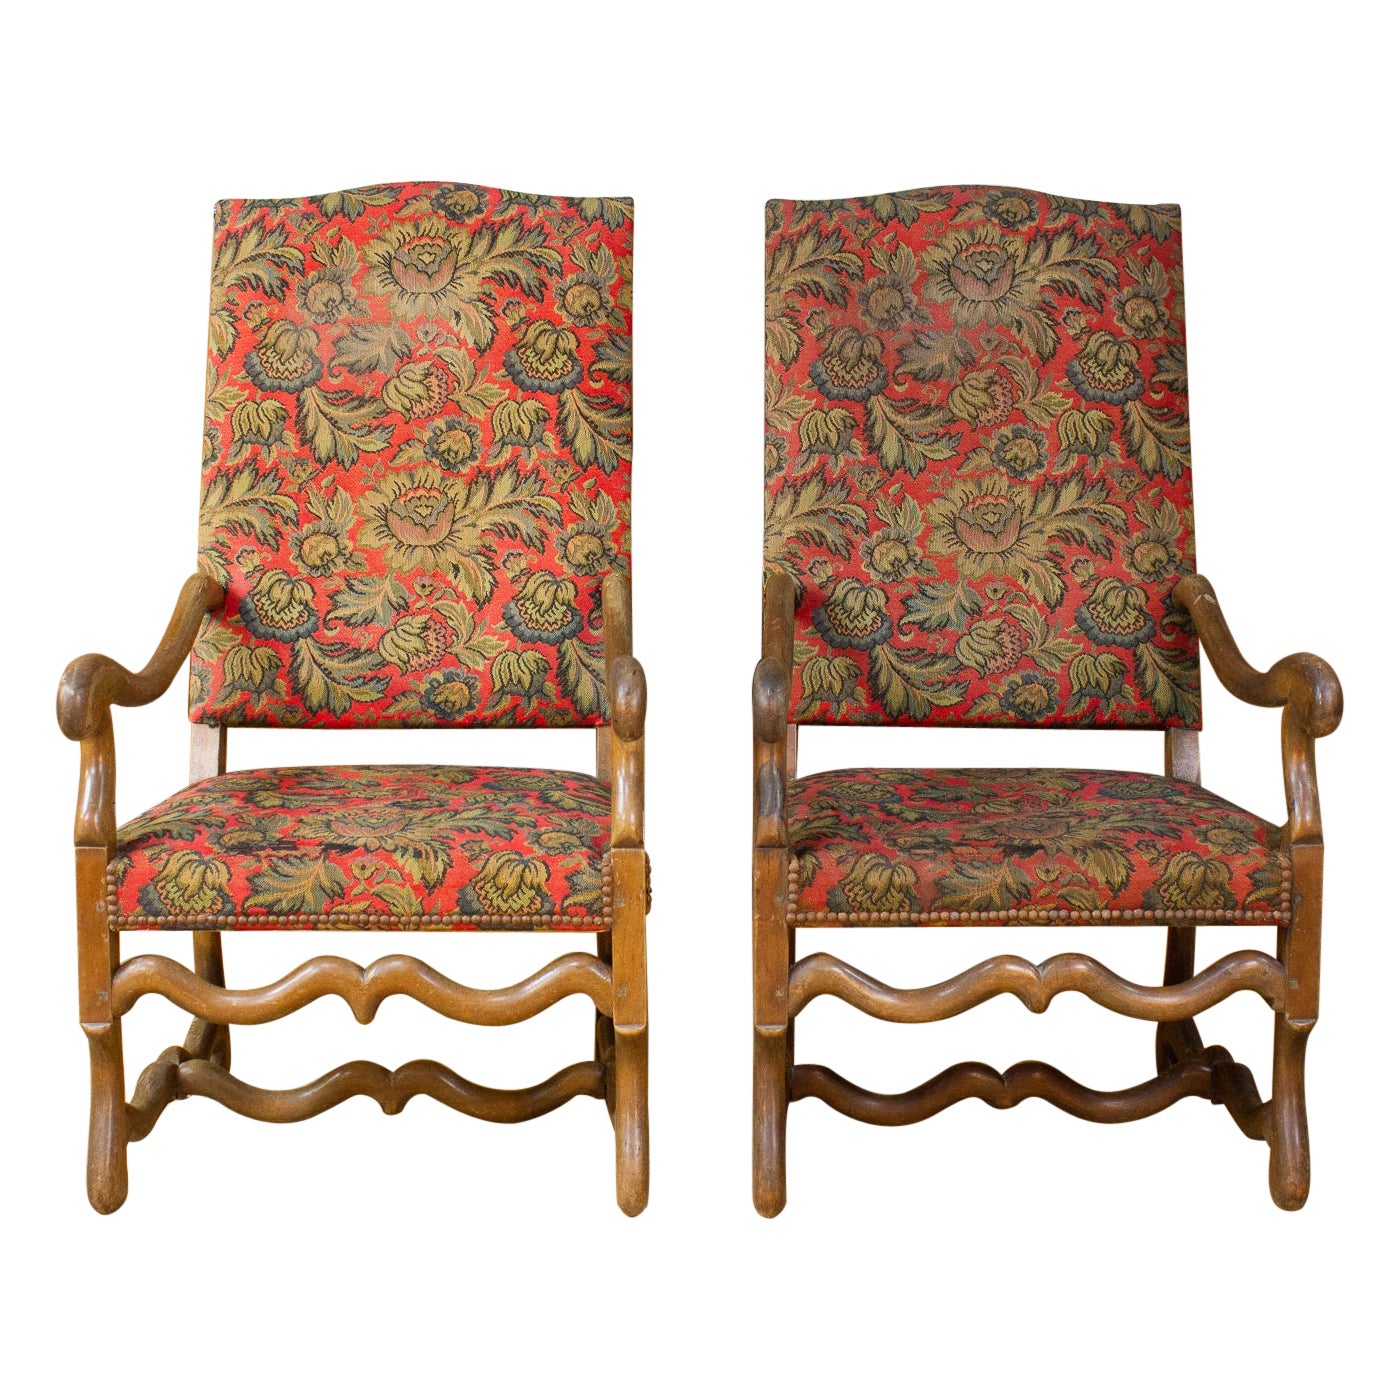 Paire de fauteuils français de style Louis XIV - 1800 19ème siècle - France 